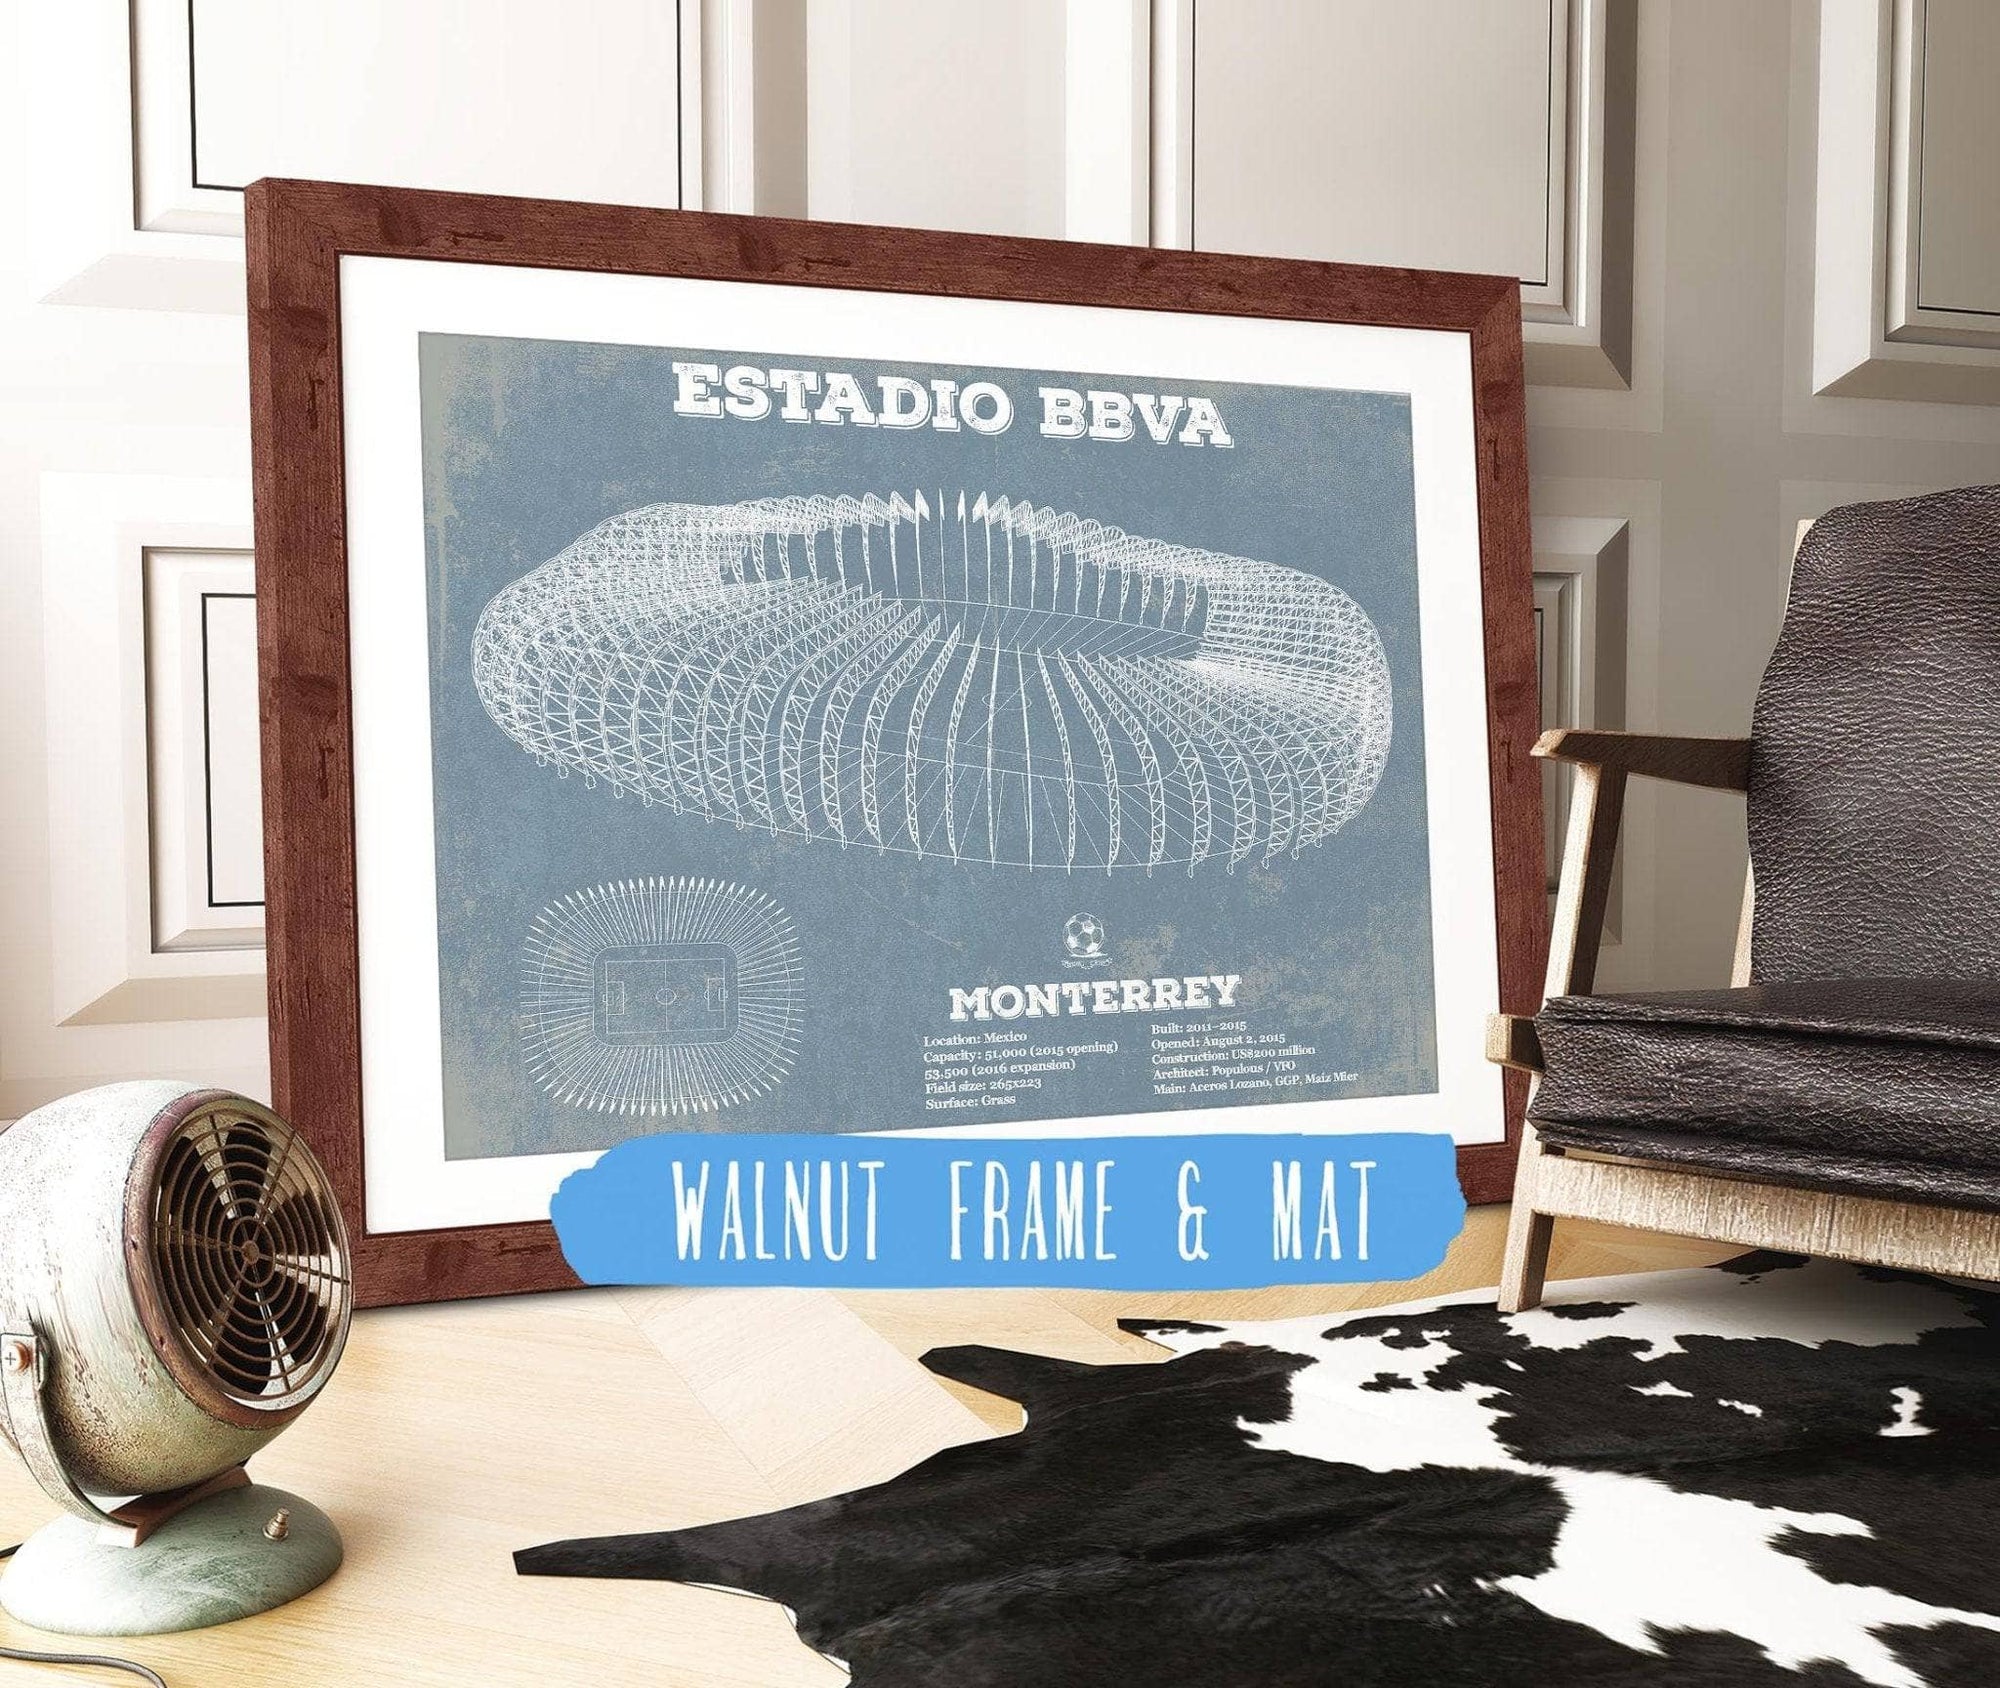 Cutler West Soccer Collection 14" x 11" / Walnut Frame & Mat Monterrey Vintage Estadio BBVA Soccer Print 833110141_57585